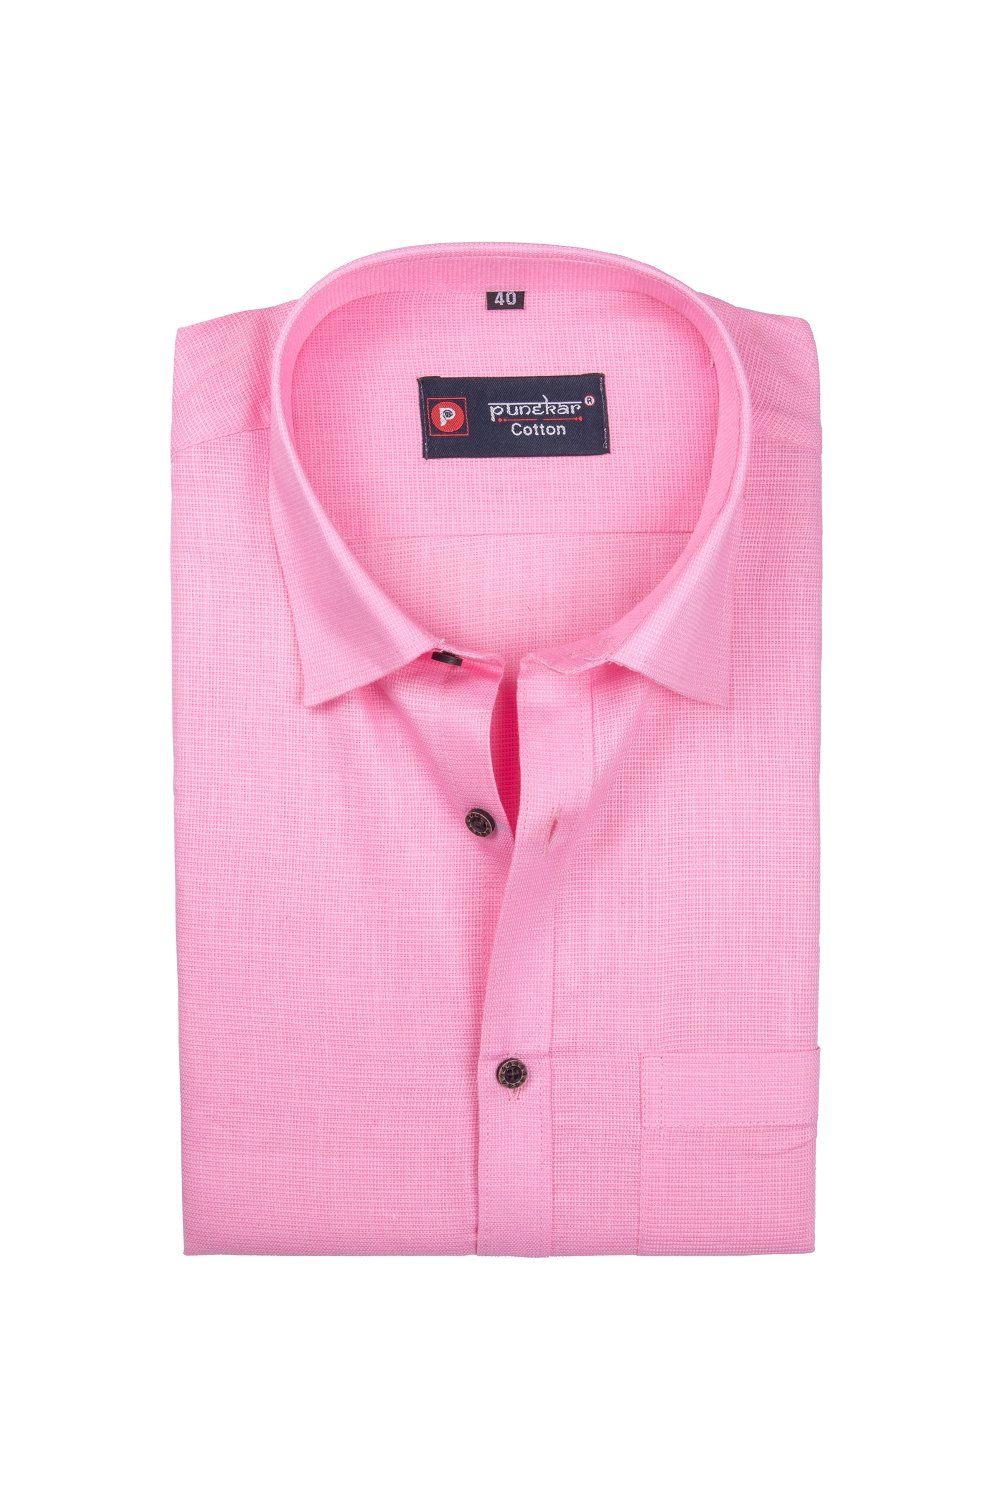 Punekar Cotton Pink Color Silky Linen Cotton Shirt for Men&